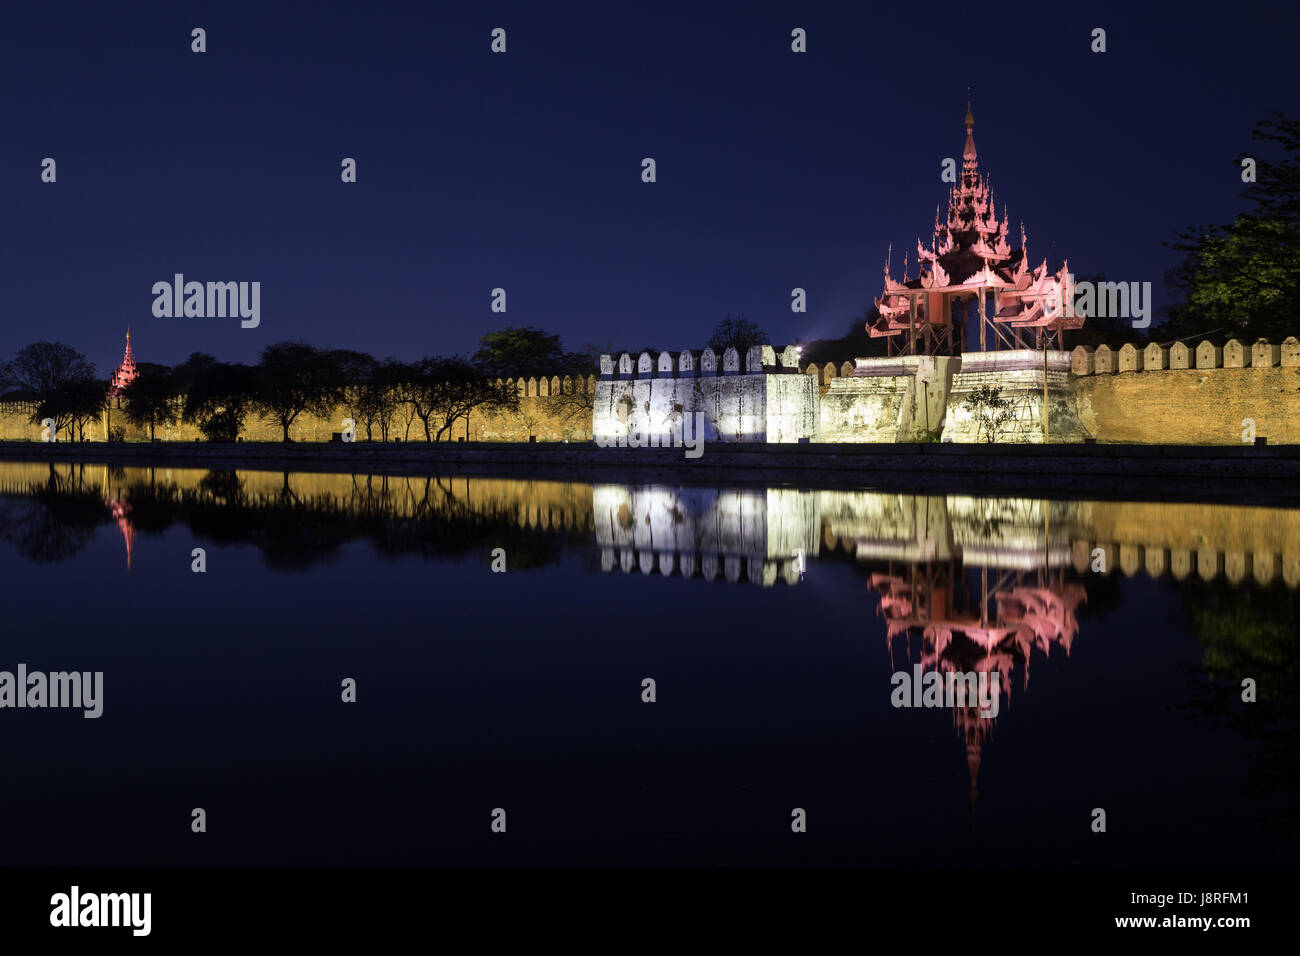 Zitadelle Wand, Bastion und Pyatthat (Turm) und Graben in den Königspalast Mandalay in Mandalay, Myanmar (Burma) in der Nacht beleuchtet. Stockfoto